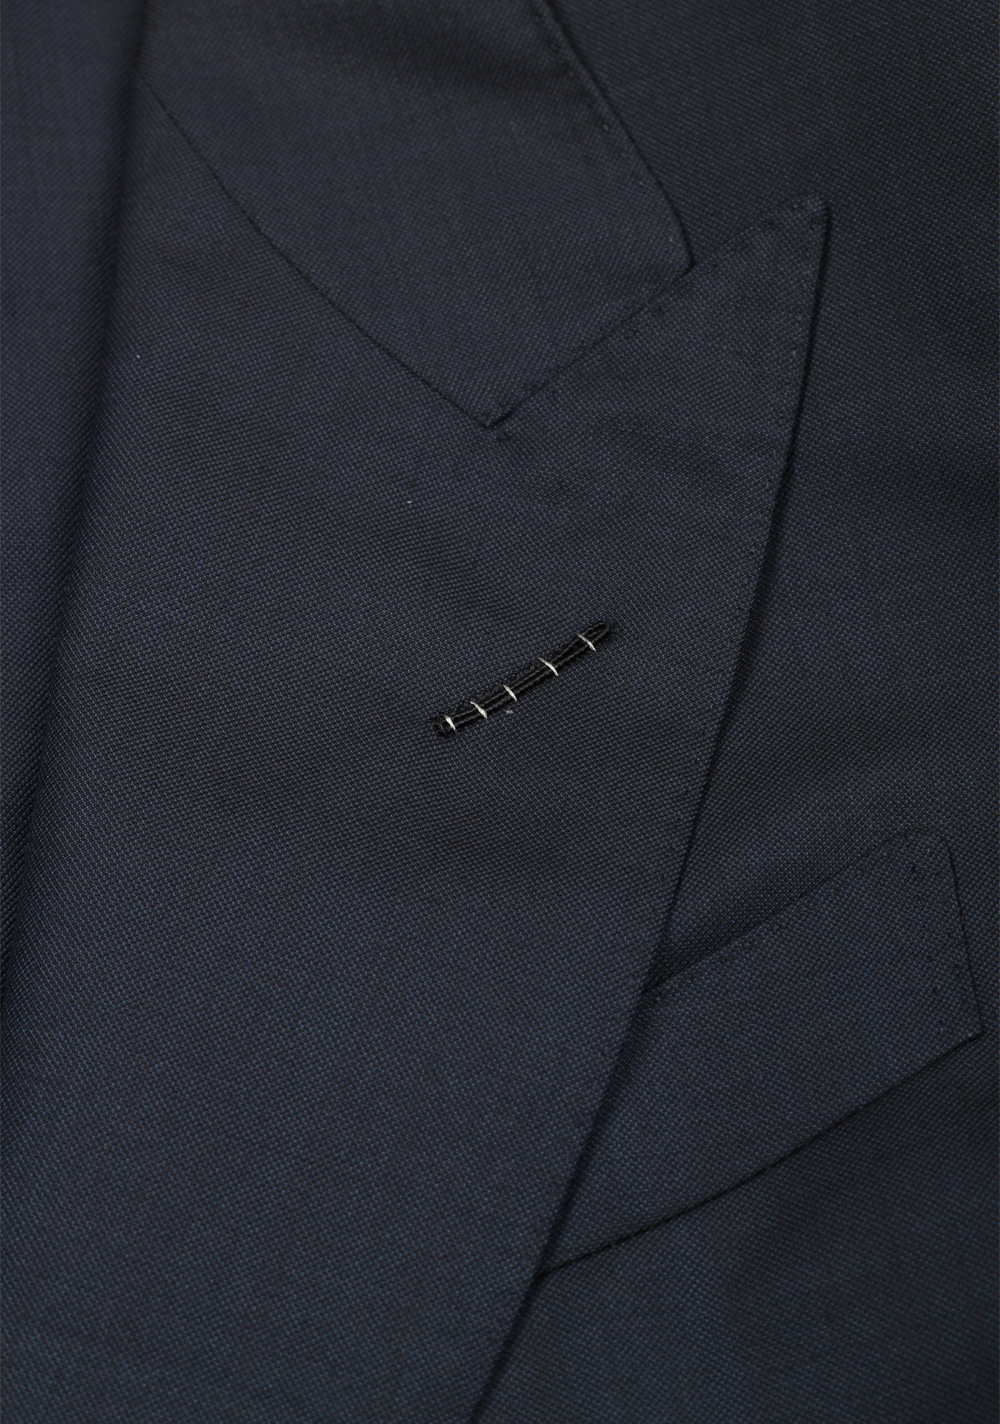 TOM FORD Shelton Blue 3 Piece Suit Size 46C / 36S U.S. | Costume Limité